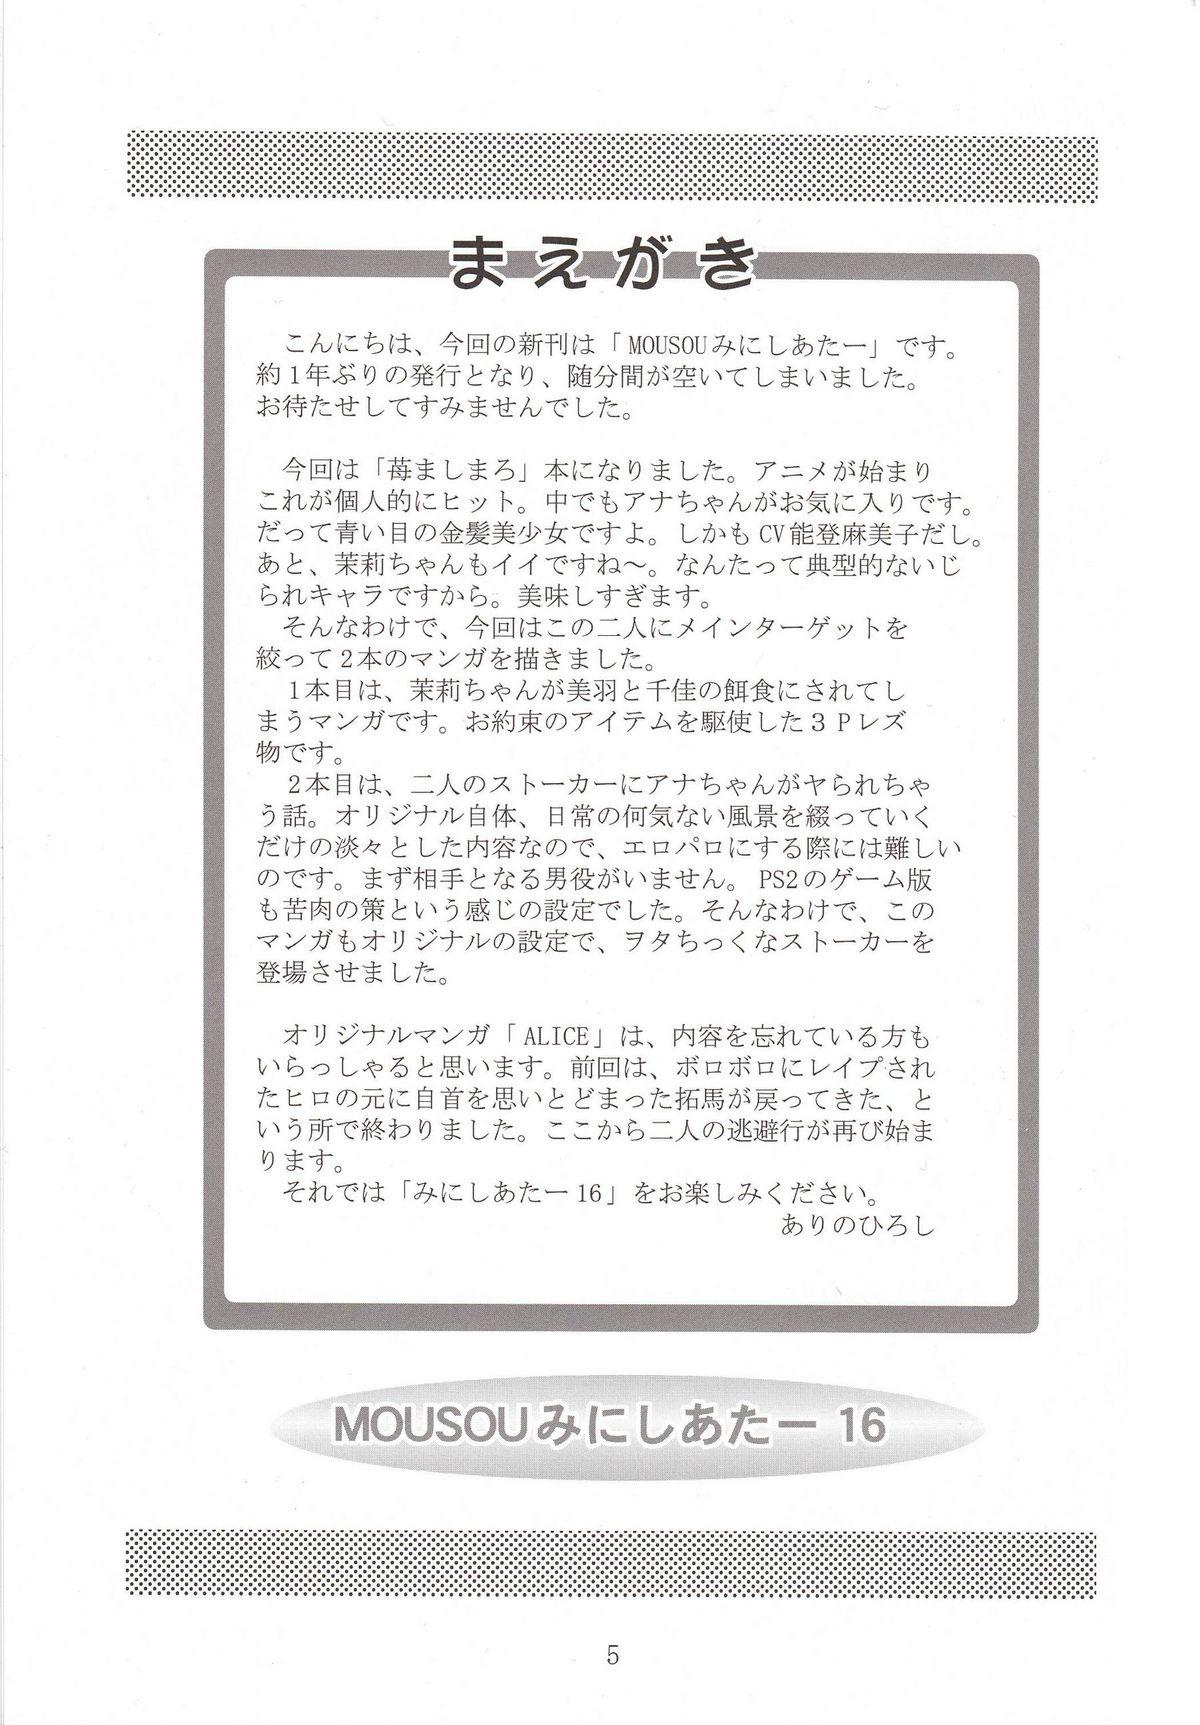 Missionary Position Porn Mousou Mini Theater 16 - Ichigo mashimaro Pareja - Page 4